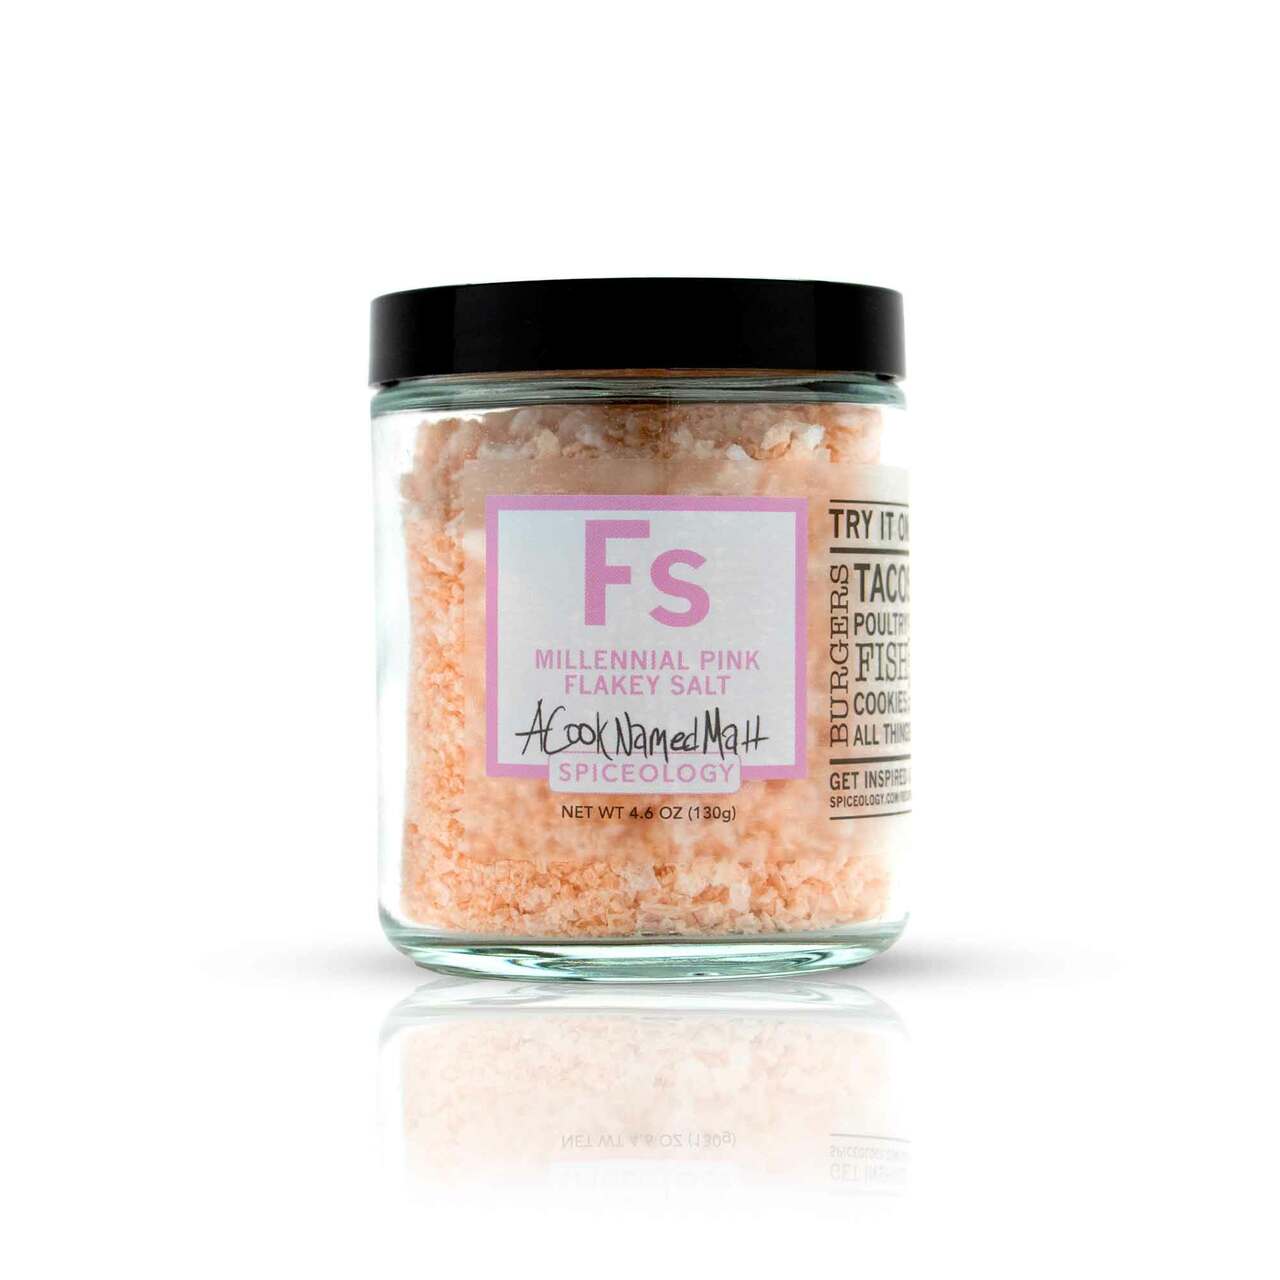 Millennial Pink Flakey Salt from A Cook Named Matt - Spiceology